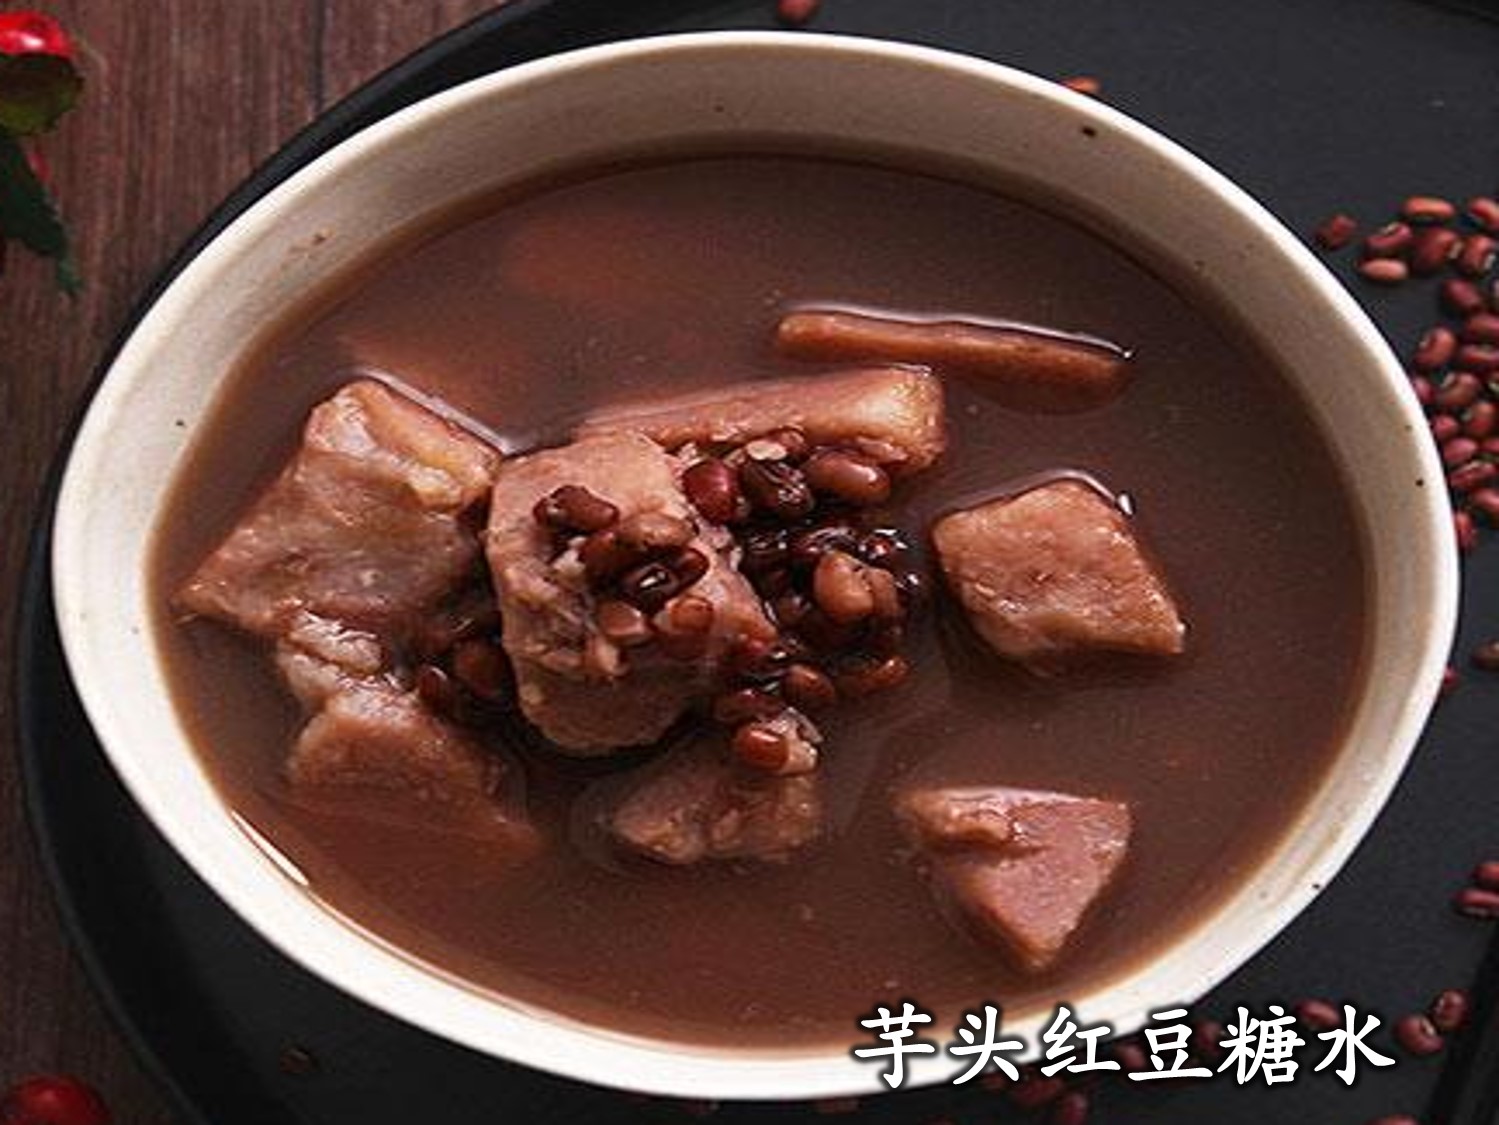 常吃红豆有什么益处呢？ - 快乐饮食 - 三门峡网 · 三门峡日报官方网站